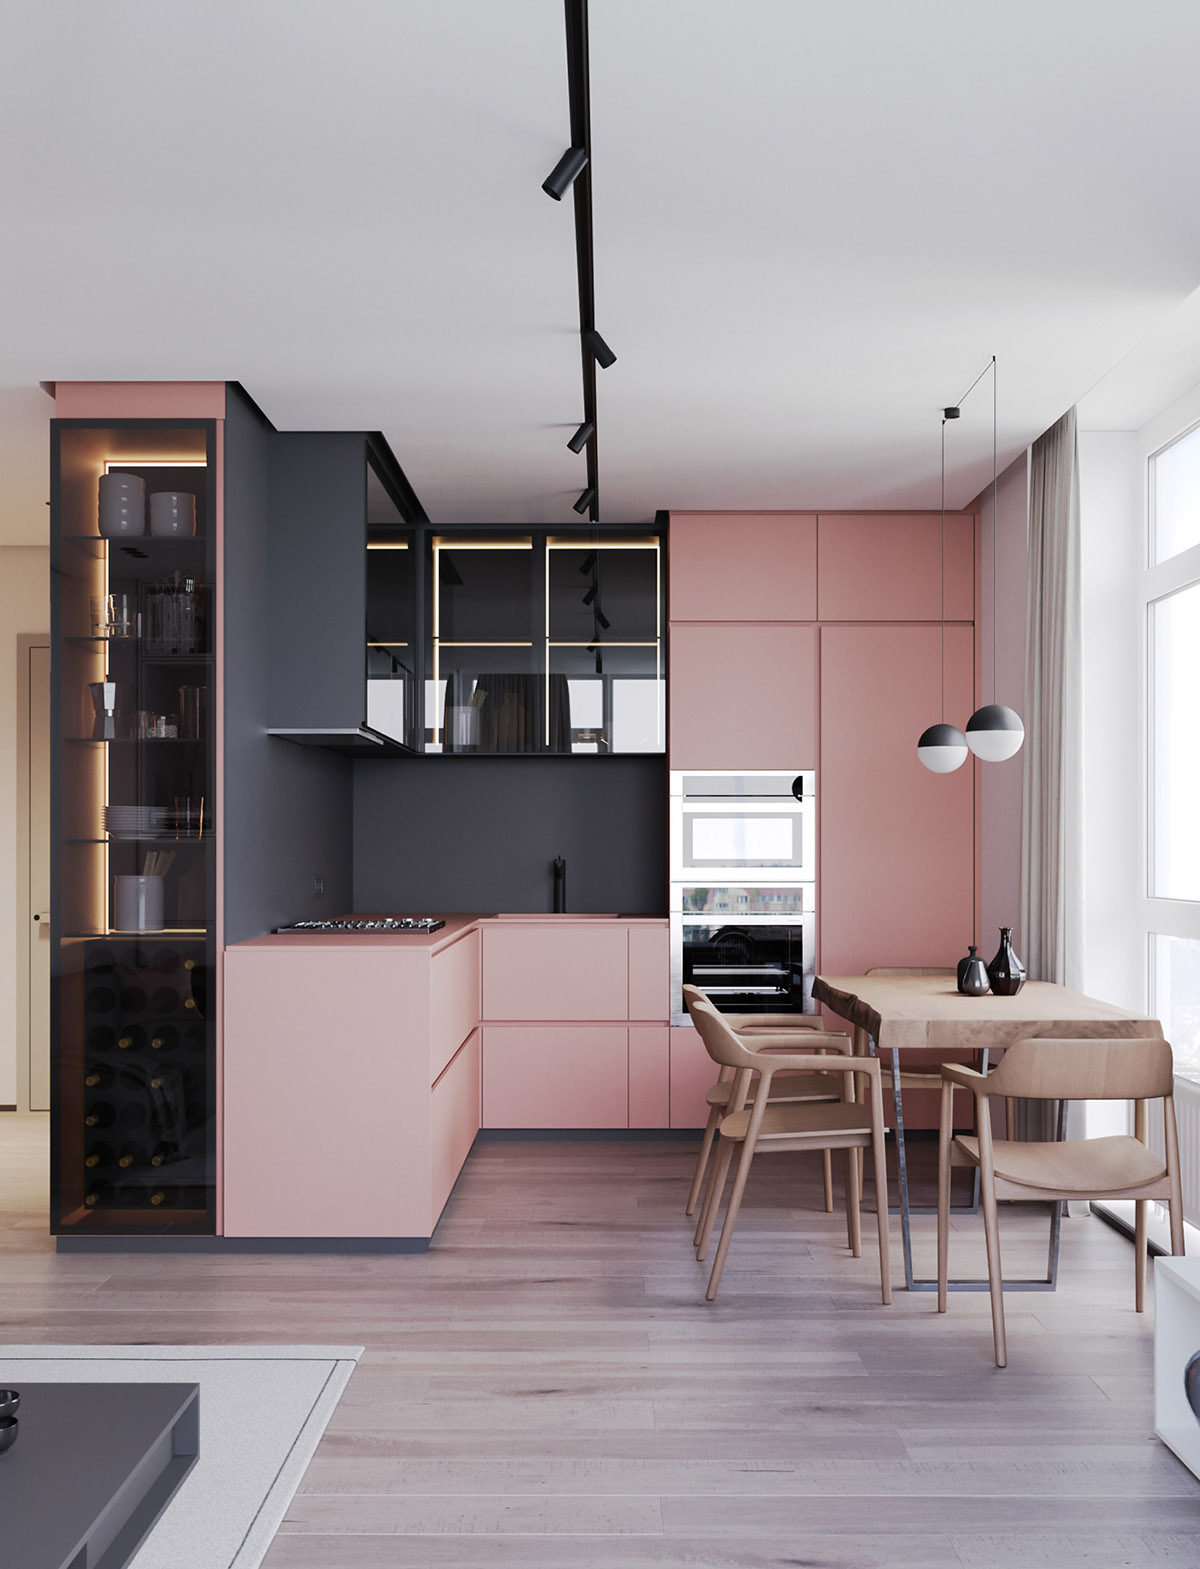 Nhắc đến một căn bếp màu hồng, nhiều người sẽ nghĩ đến sự dịu dàng của tông màu pastel. Nhưng khi kết hợp màu hồng với tủ bếp màu đen hoặc xám, cùng chiếc bàn ăn bằng gỗ thô, tất cả đều có tông màu lì sẽ làm thay đổi định nghĩa của nhiều người về sự dịu dàng.